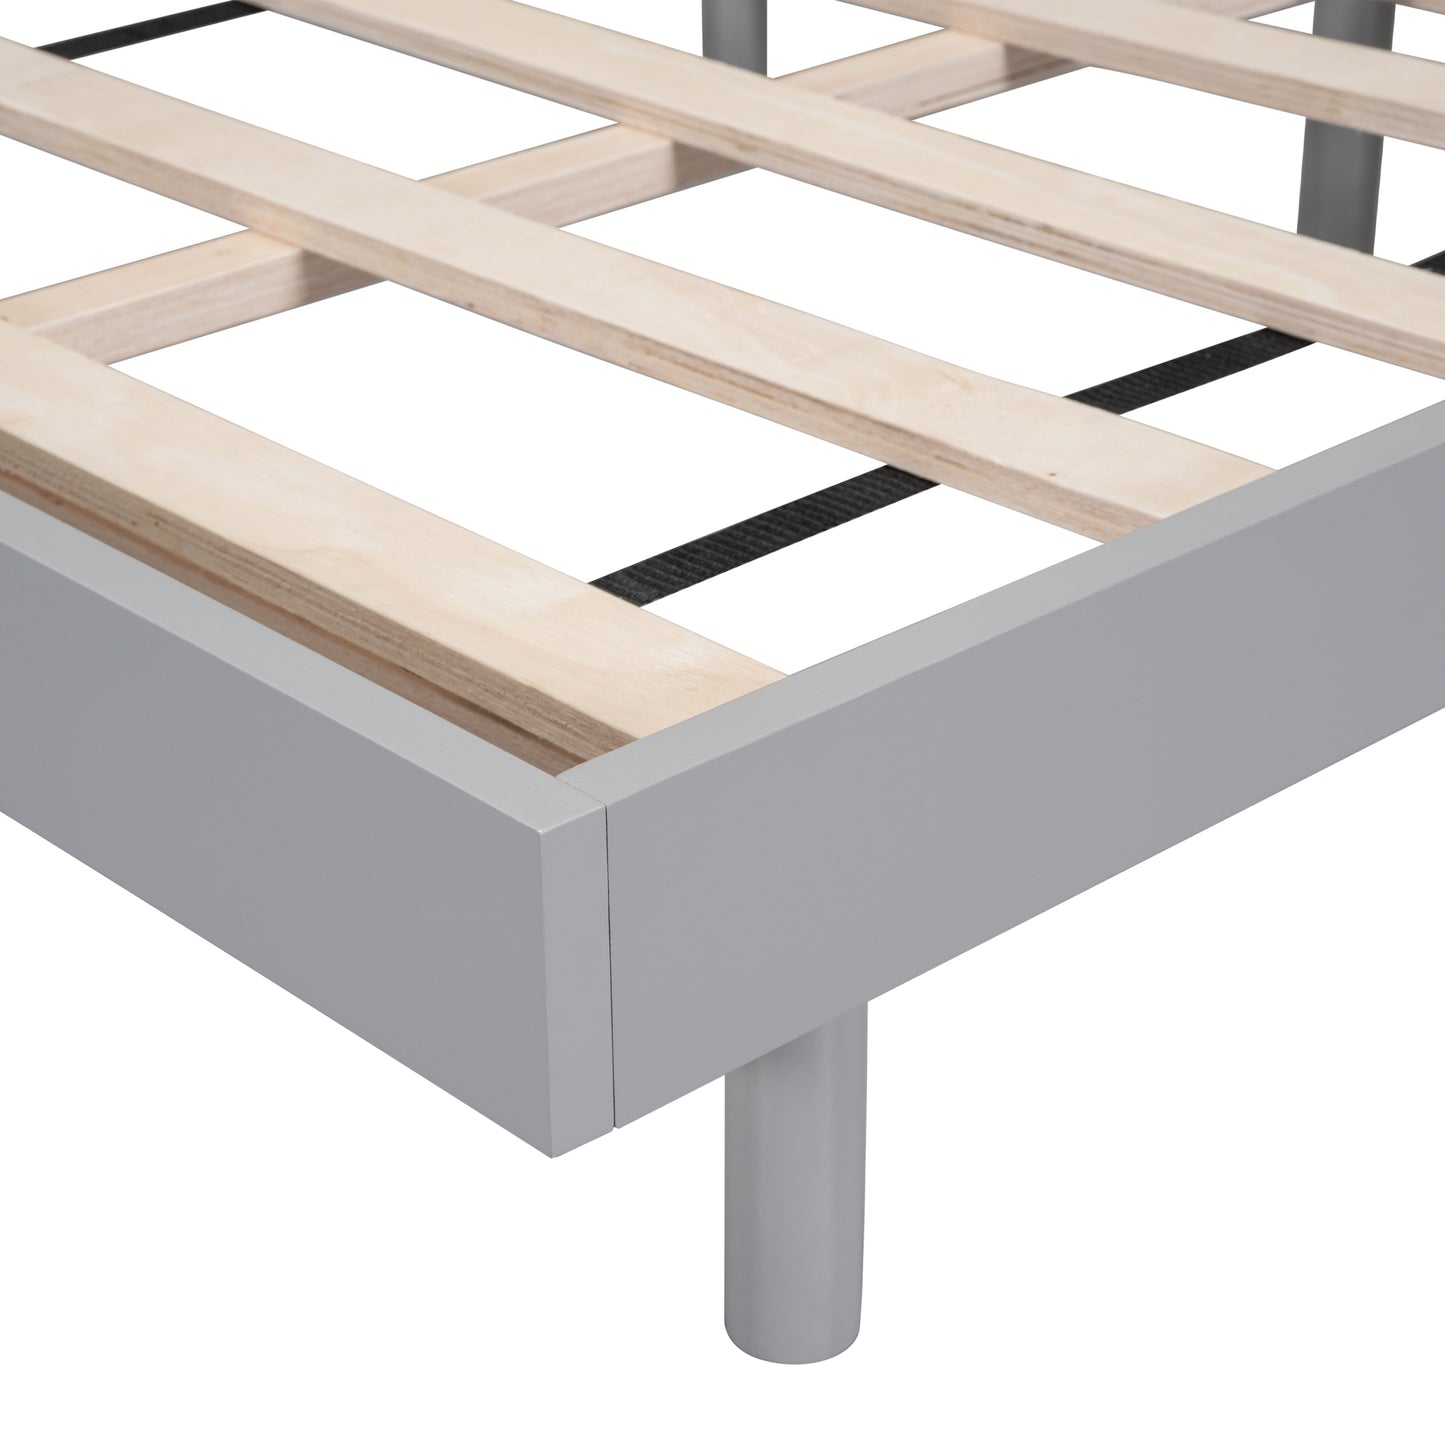 Modern Design Queen Floating Platform Bed Frame for Grey Color